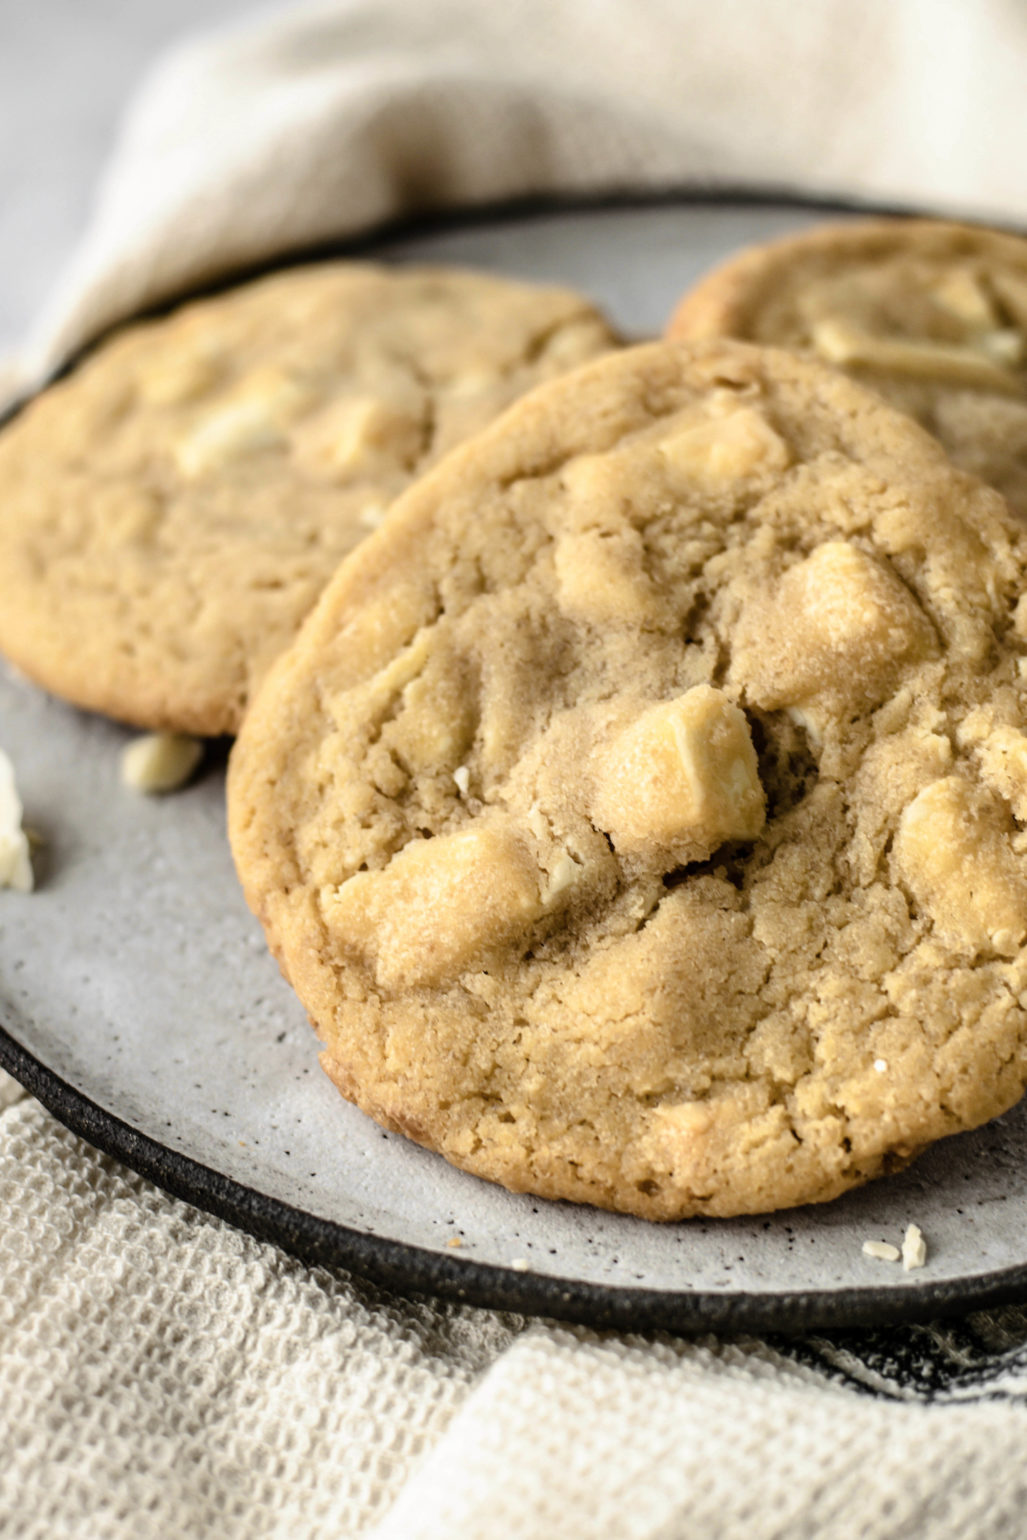 Rezept für weiße Schokoladen Cookies, weiche amerikanische White Chocolate Chip Kekse wie von Subway schnell und einfach selber backen. Super saftig mit cremigen Schokostückchen! #Kekse #Cookies #Subway #Schoko